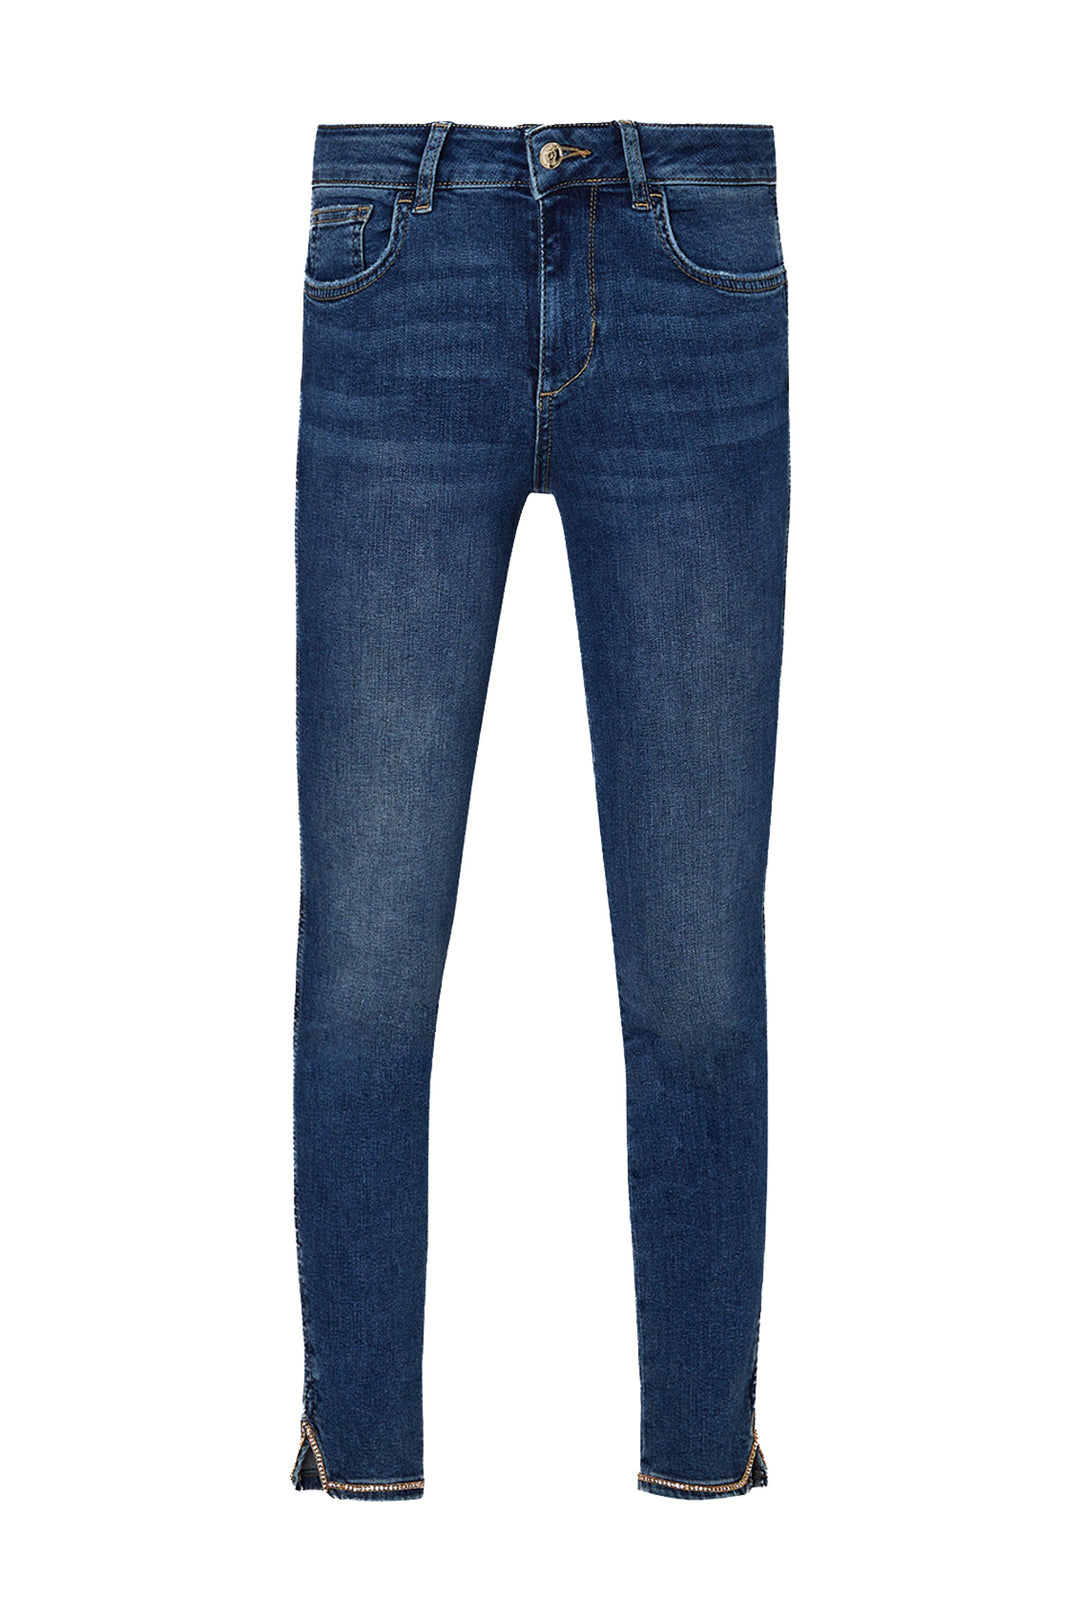 LIU JO Jeans skinny bottom up in denim di cotone stretch lavaggio used - Mancinelli 1954